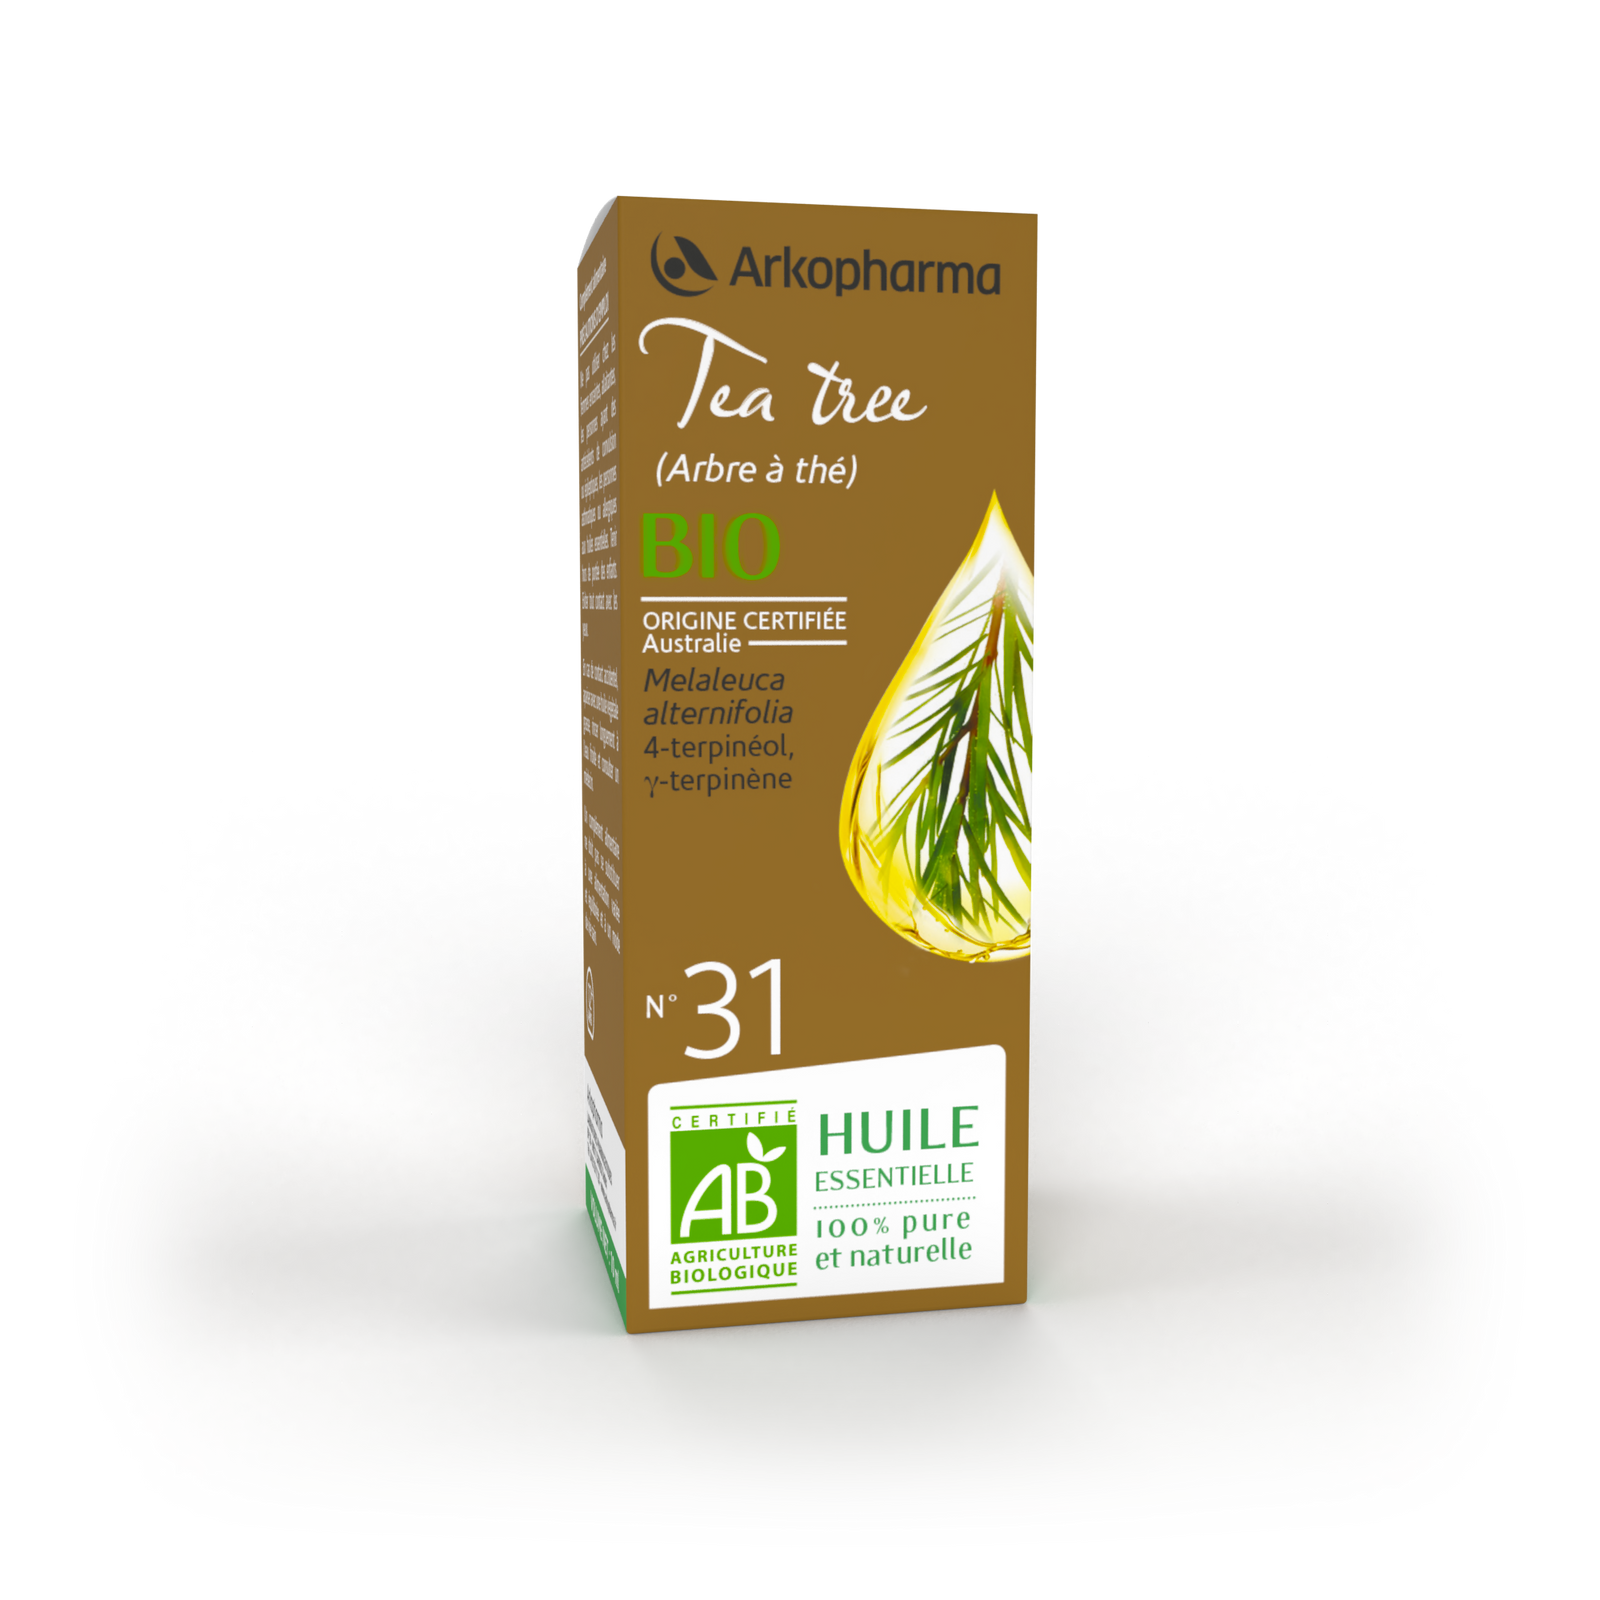 Huile essentielle bio - Arbre à thé (tea tree)